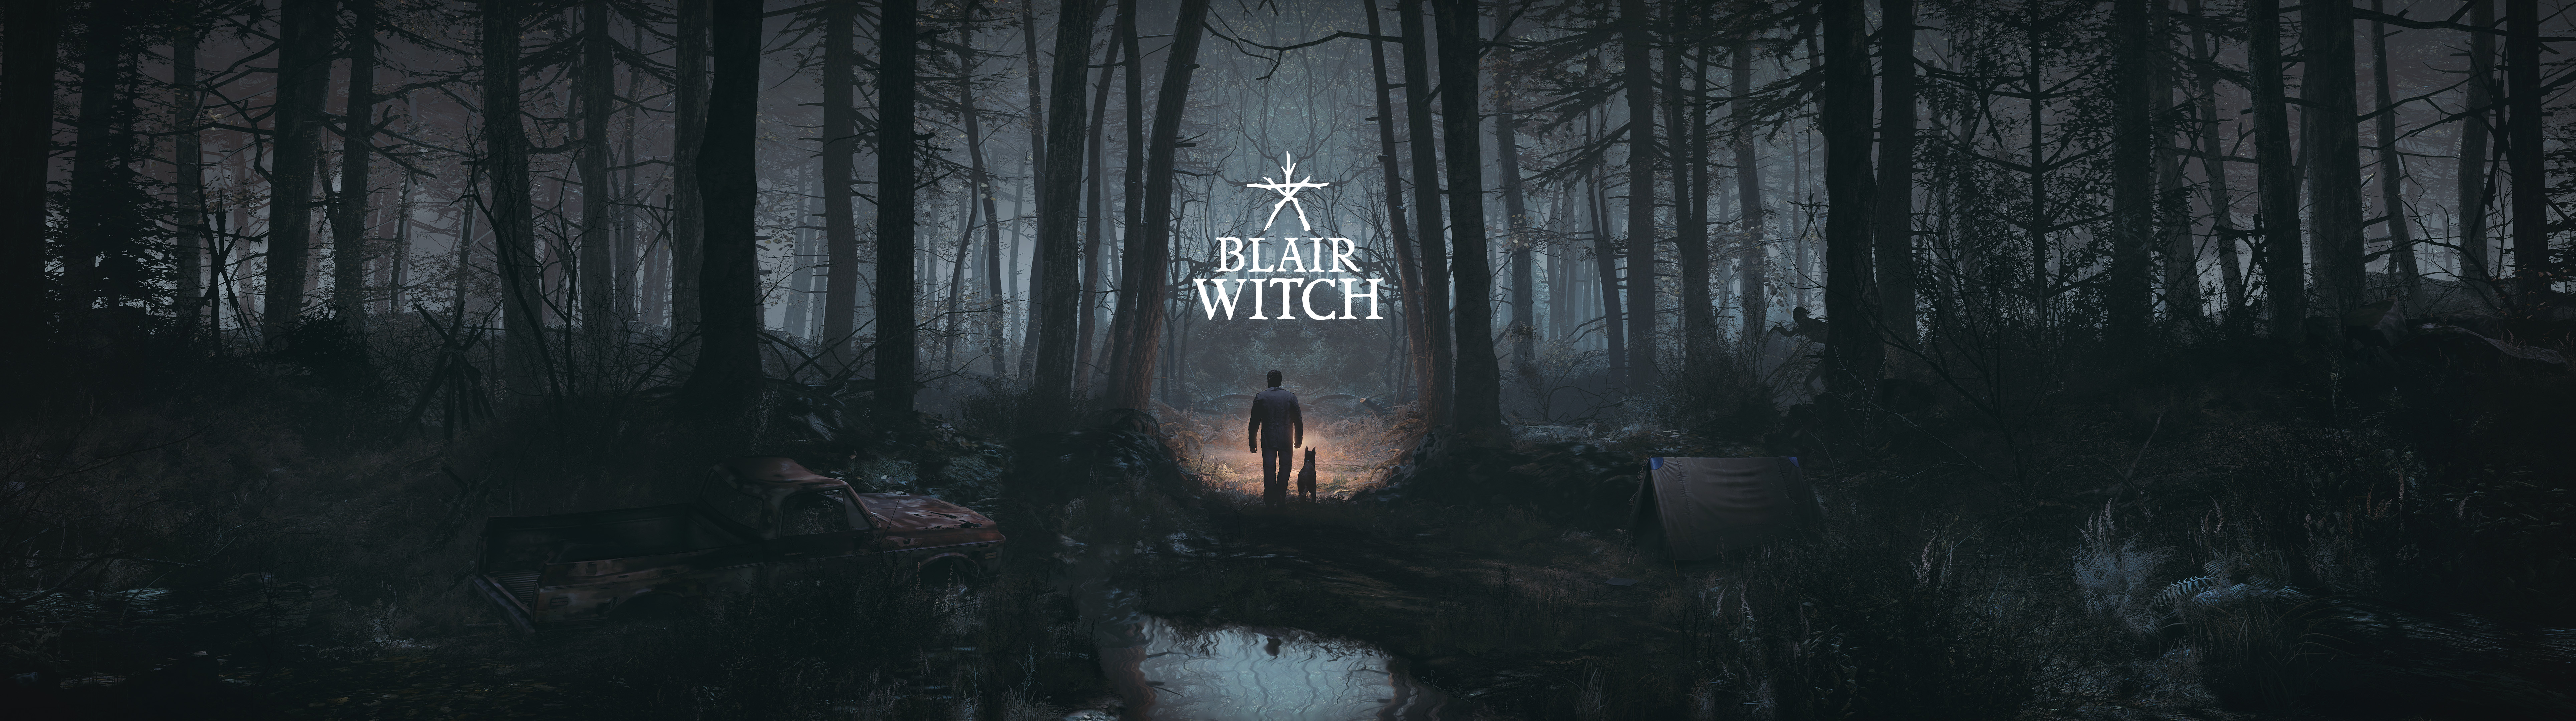 Blair Witch sekarang tersedia di PC, XB1 dan Xbox Game Pass - Peluncuran Trailer dan 11 Menit Pertama Gameplay